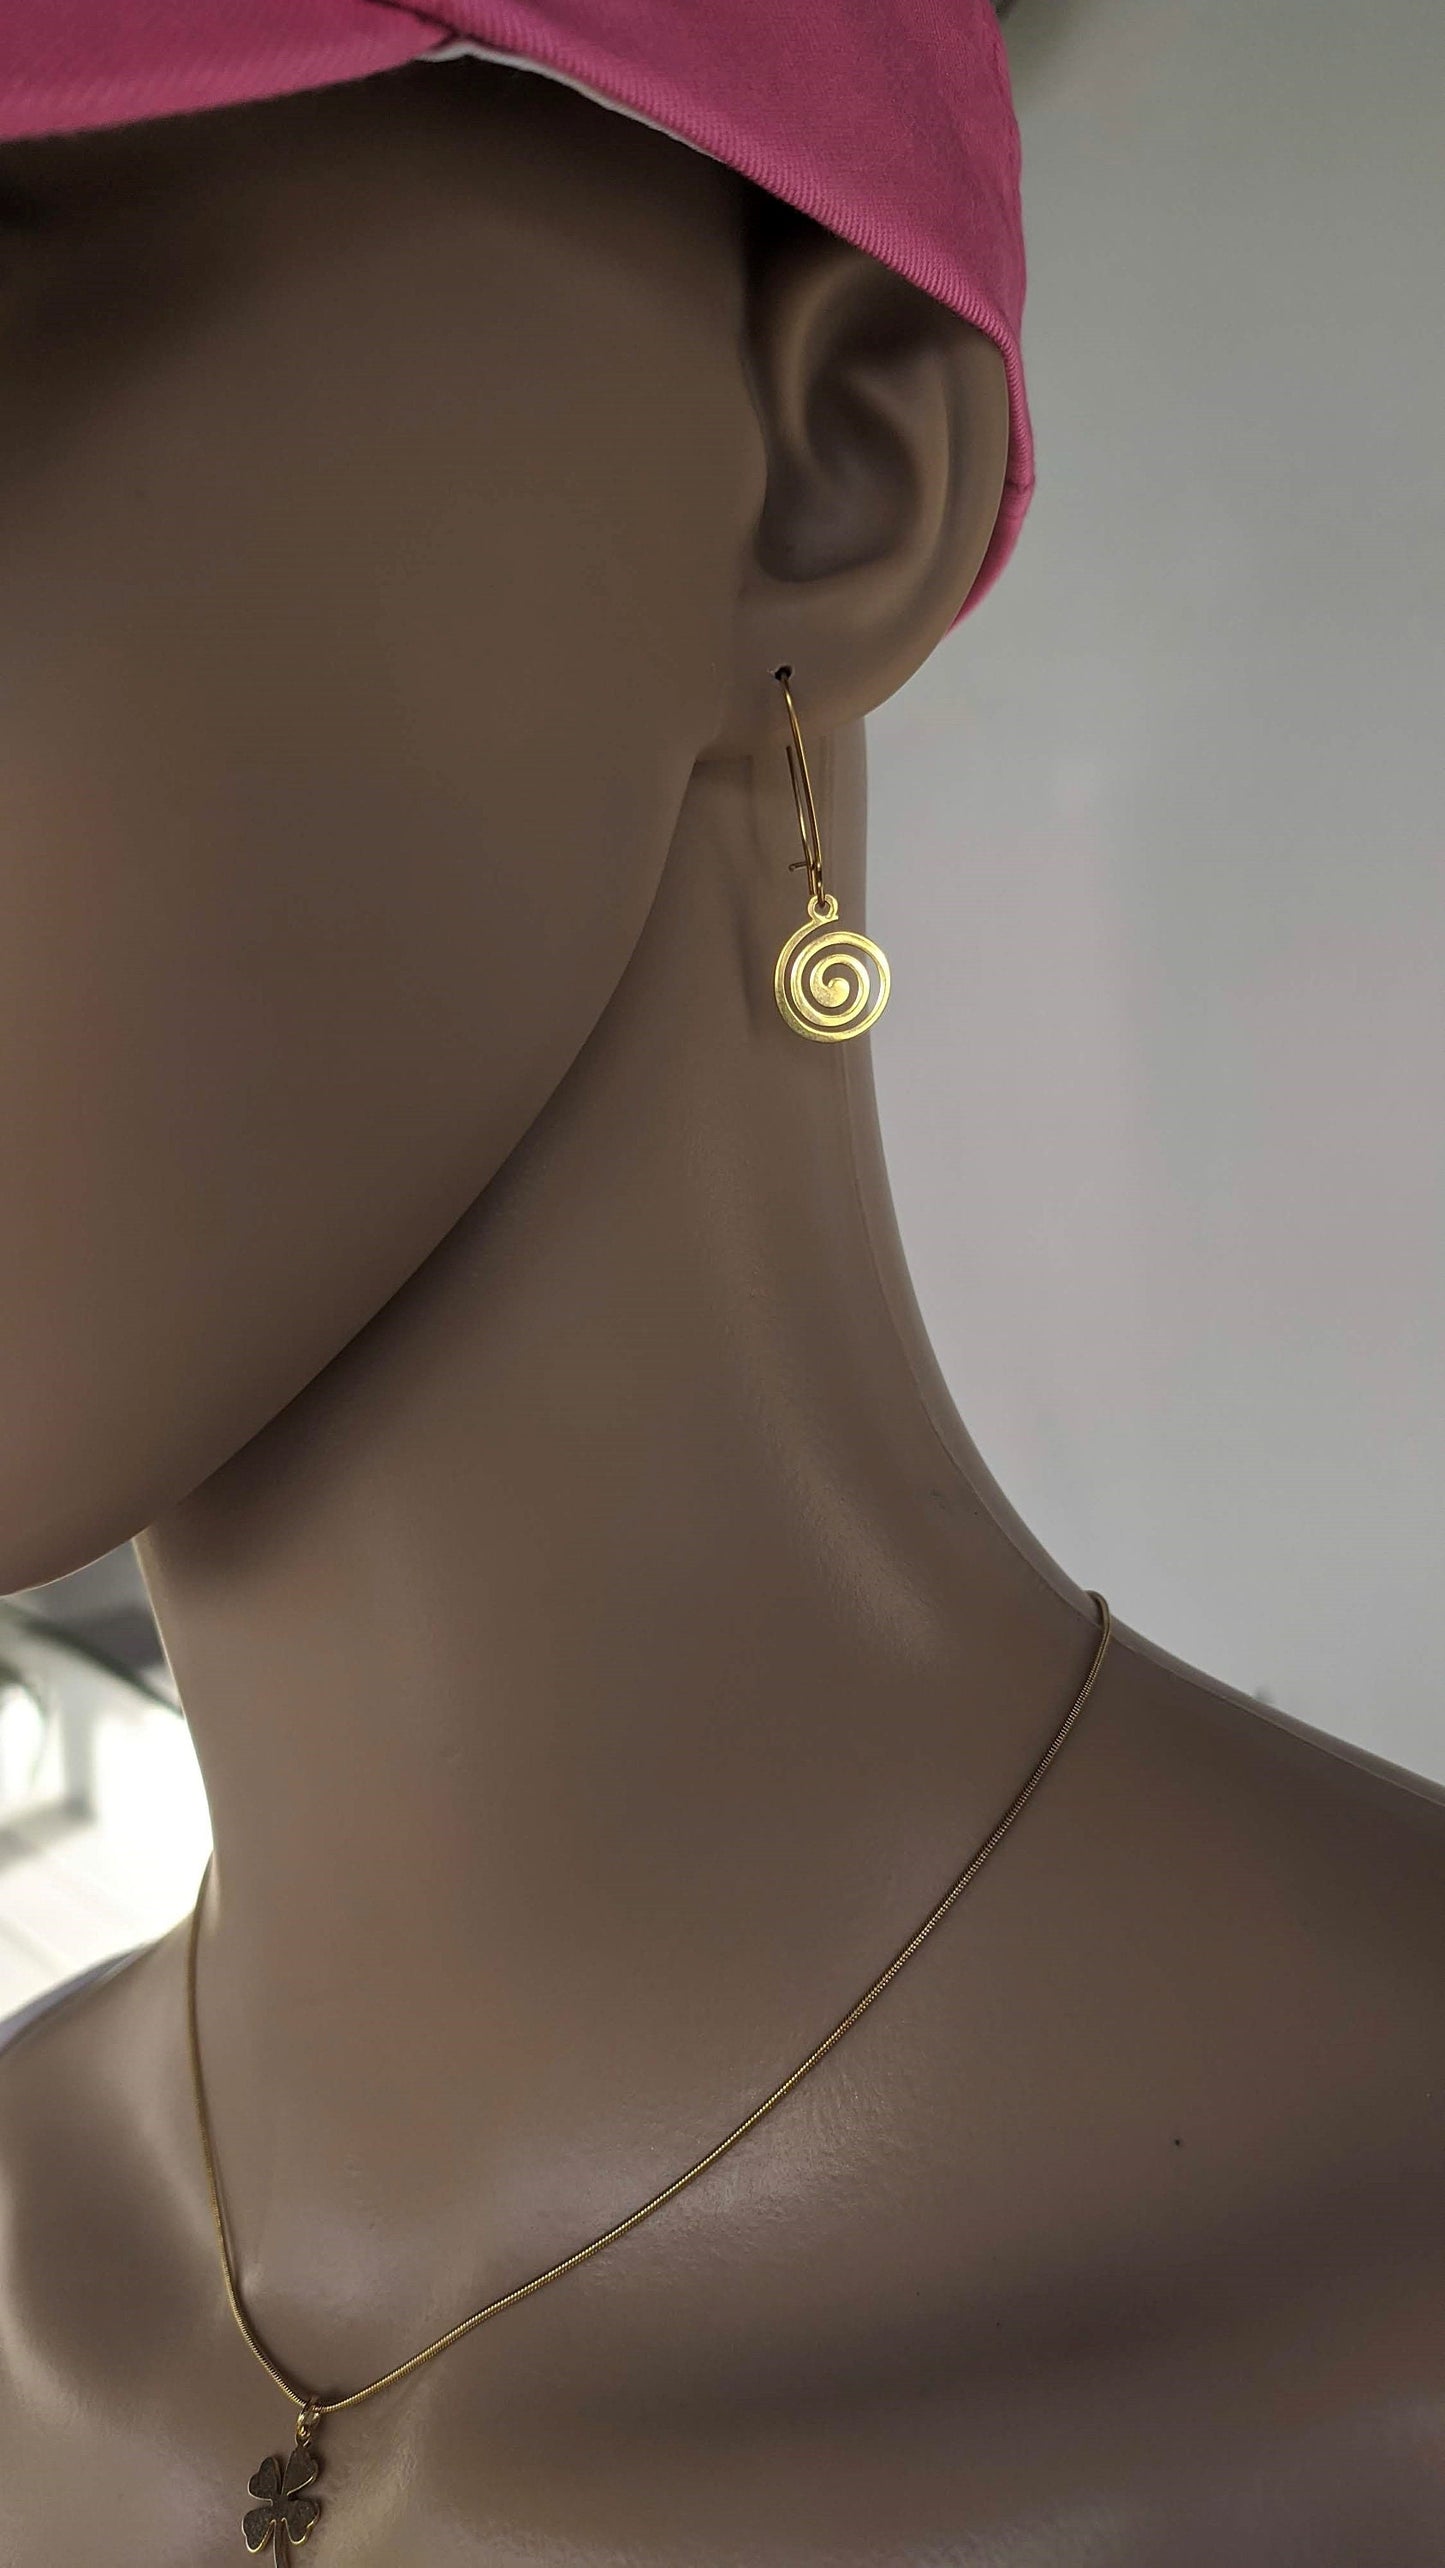 Gold Greek Spiral Earrings - Stainless Steel Earrings - Greek gift